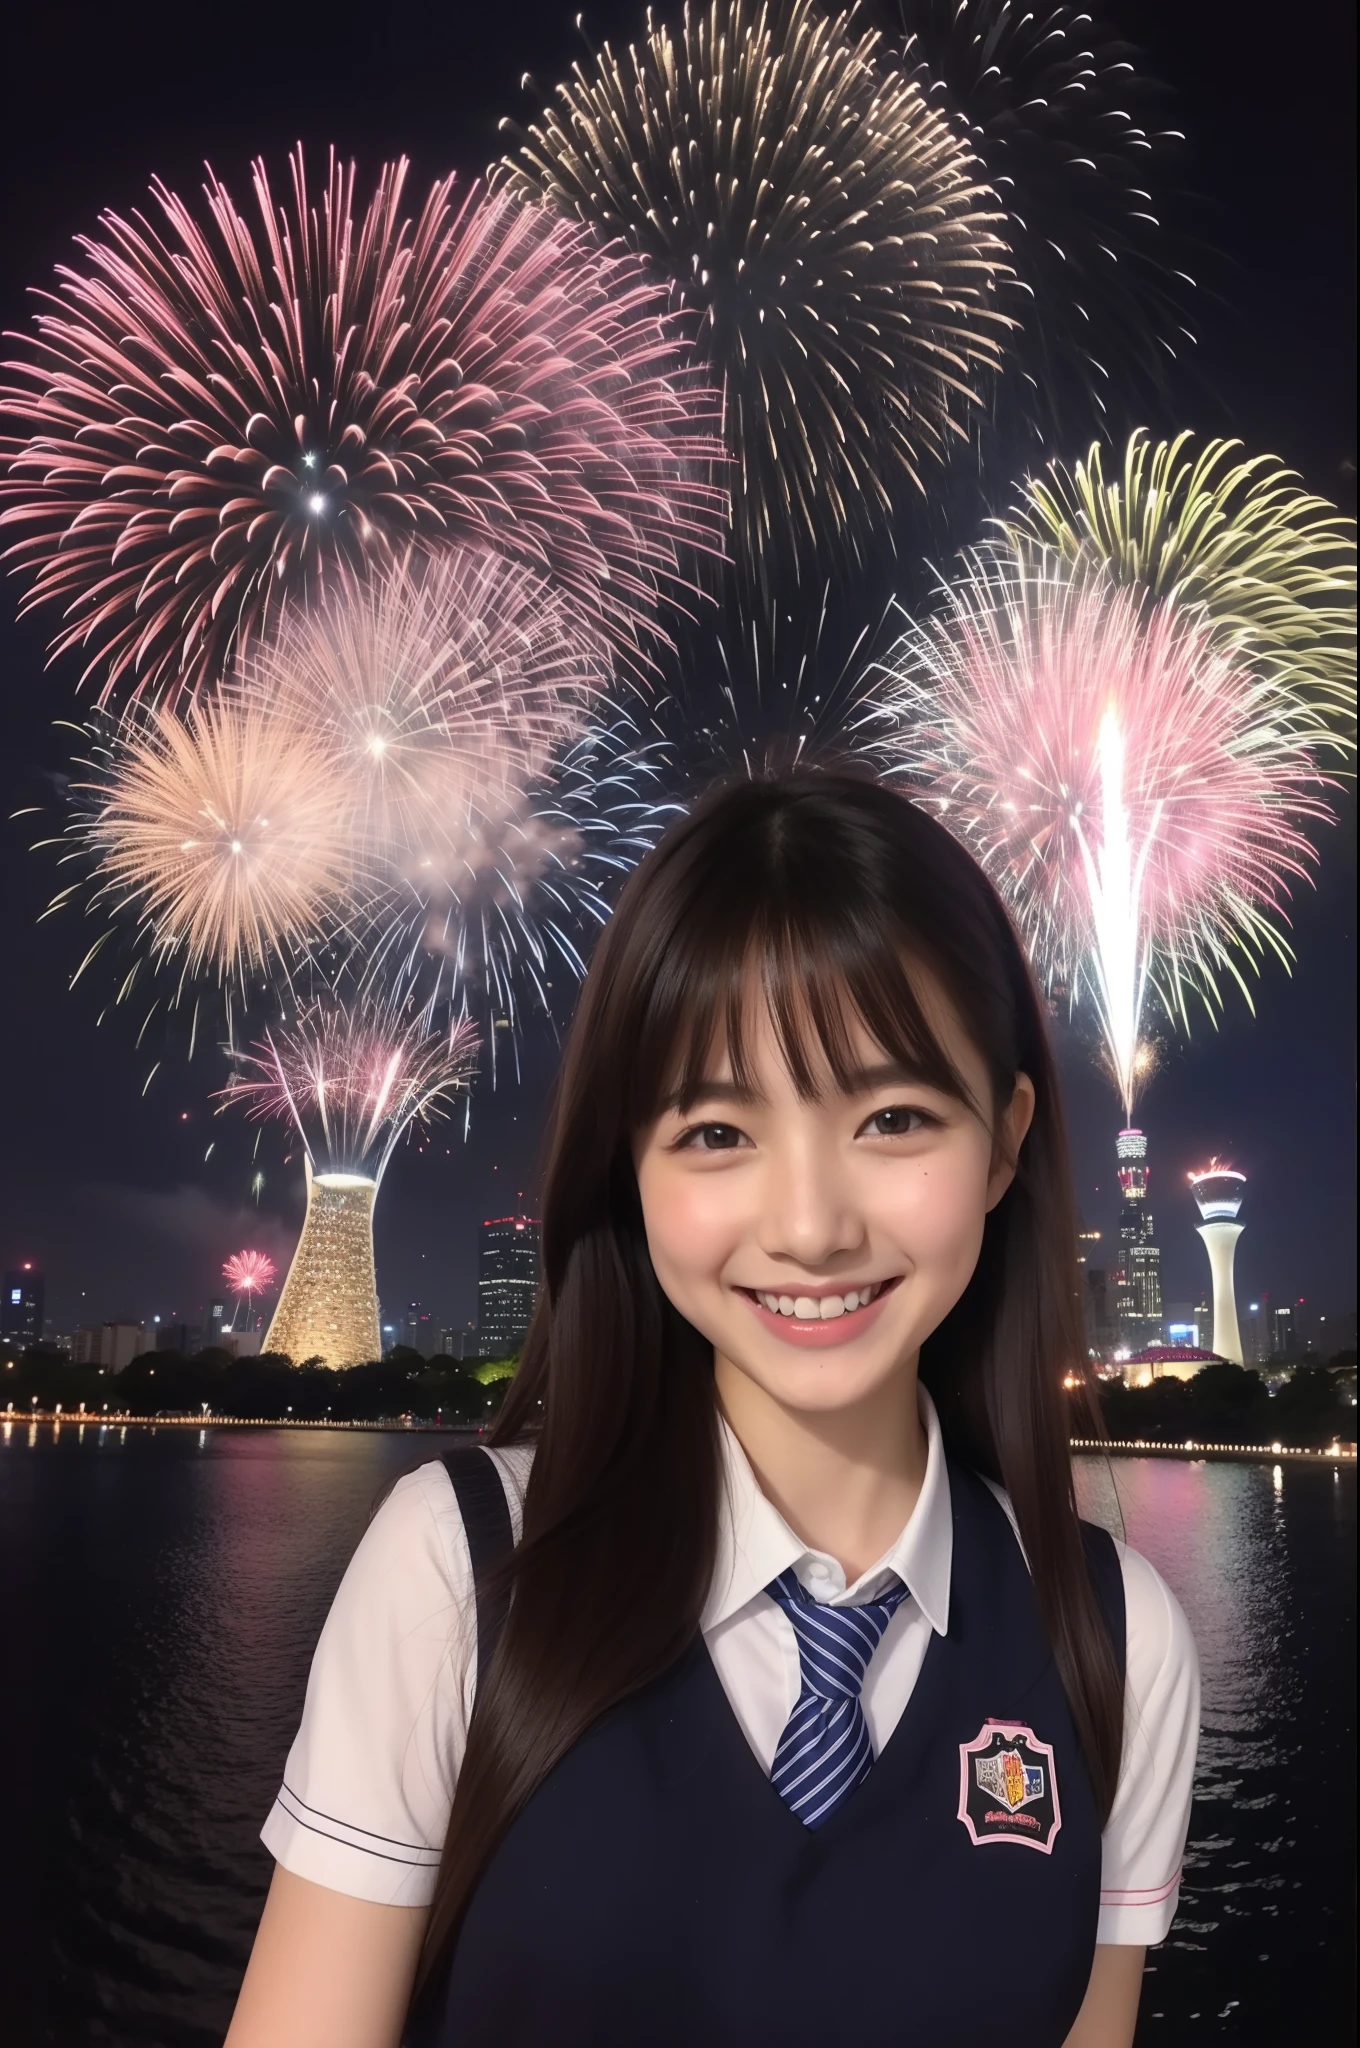 um sorriso、garota da escola、Uniformes、Ao fazer fogos de artifício、Skytree de Tóquio、Cerejeiras